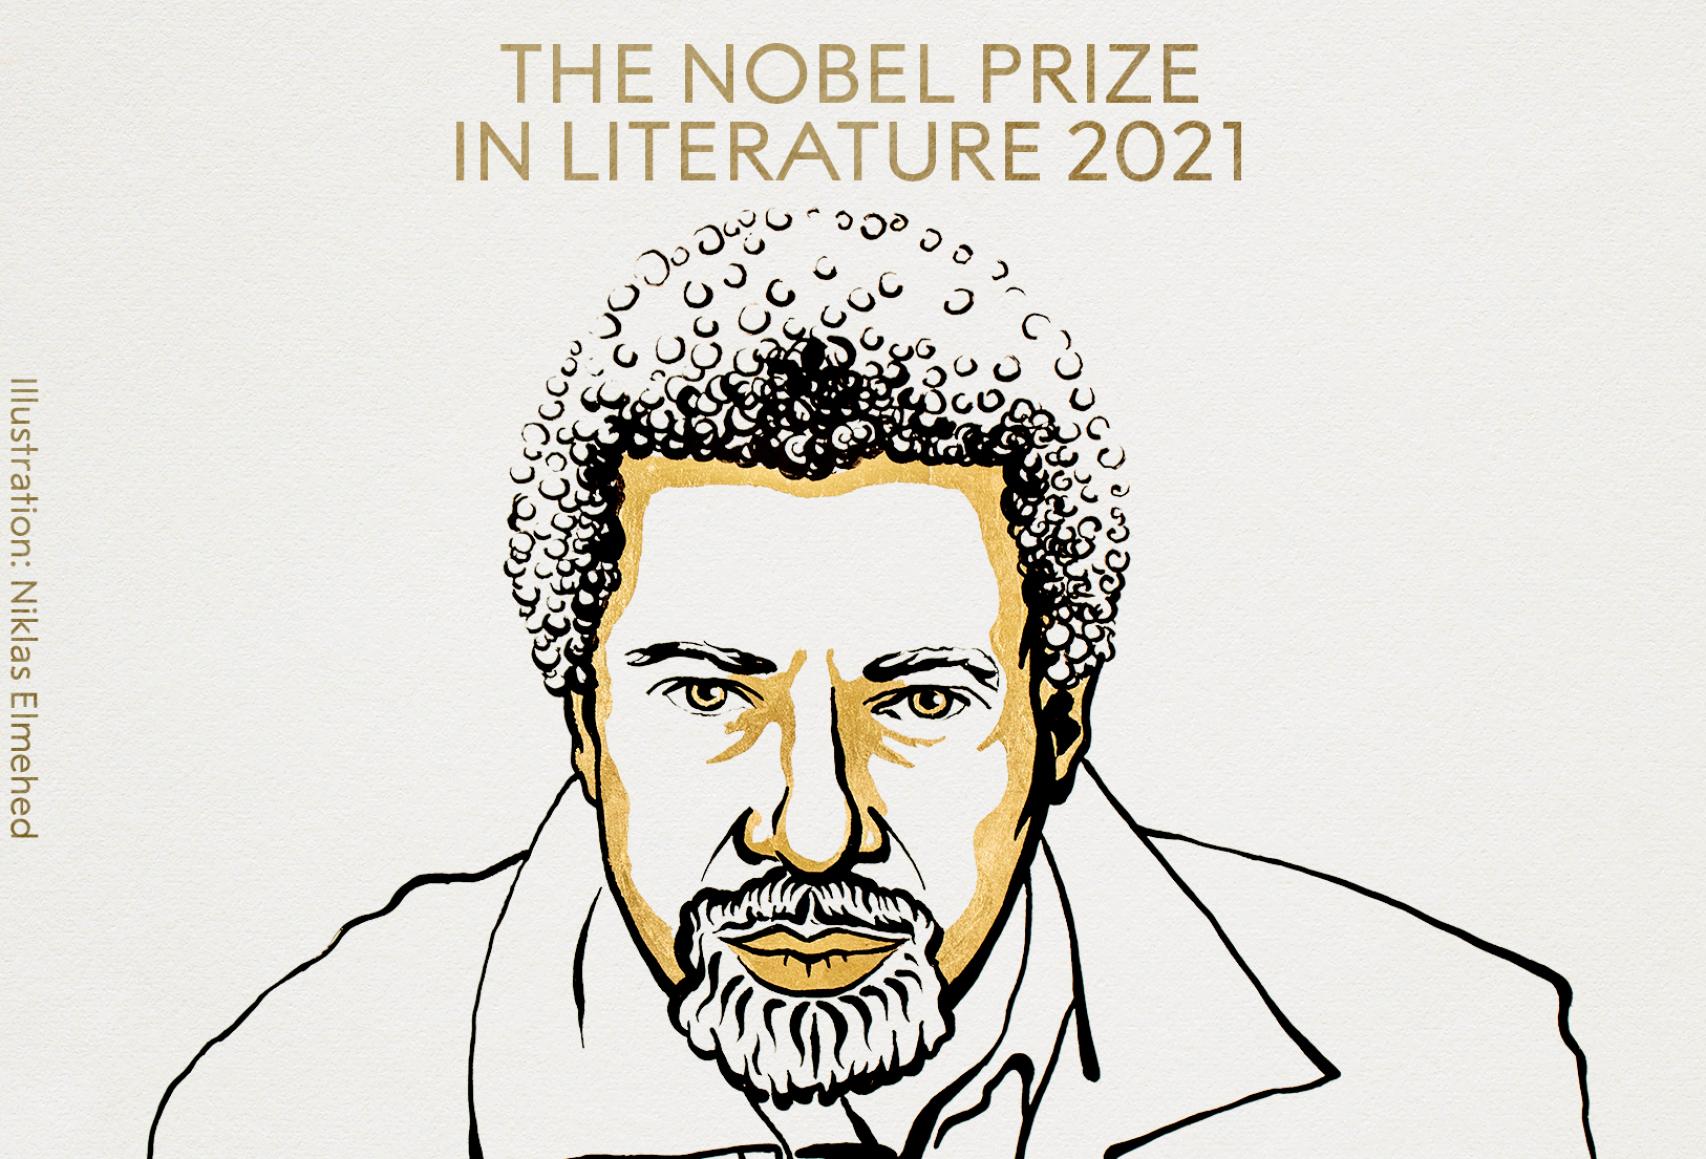 Abdulrazak Gurnah gana el Premio Nobel de Literatura 2021